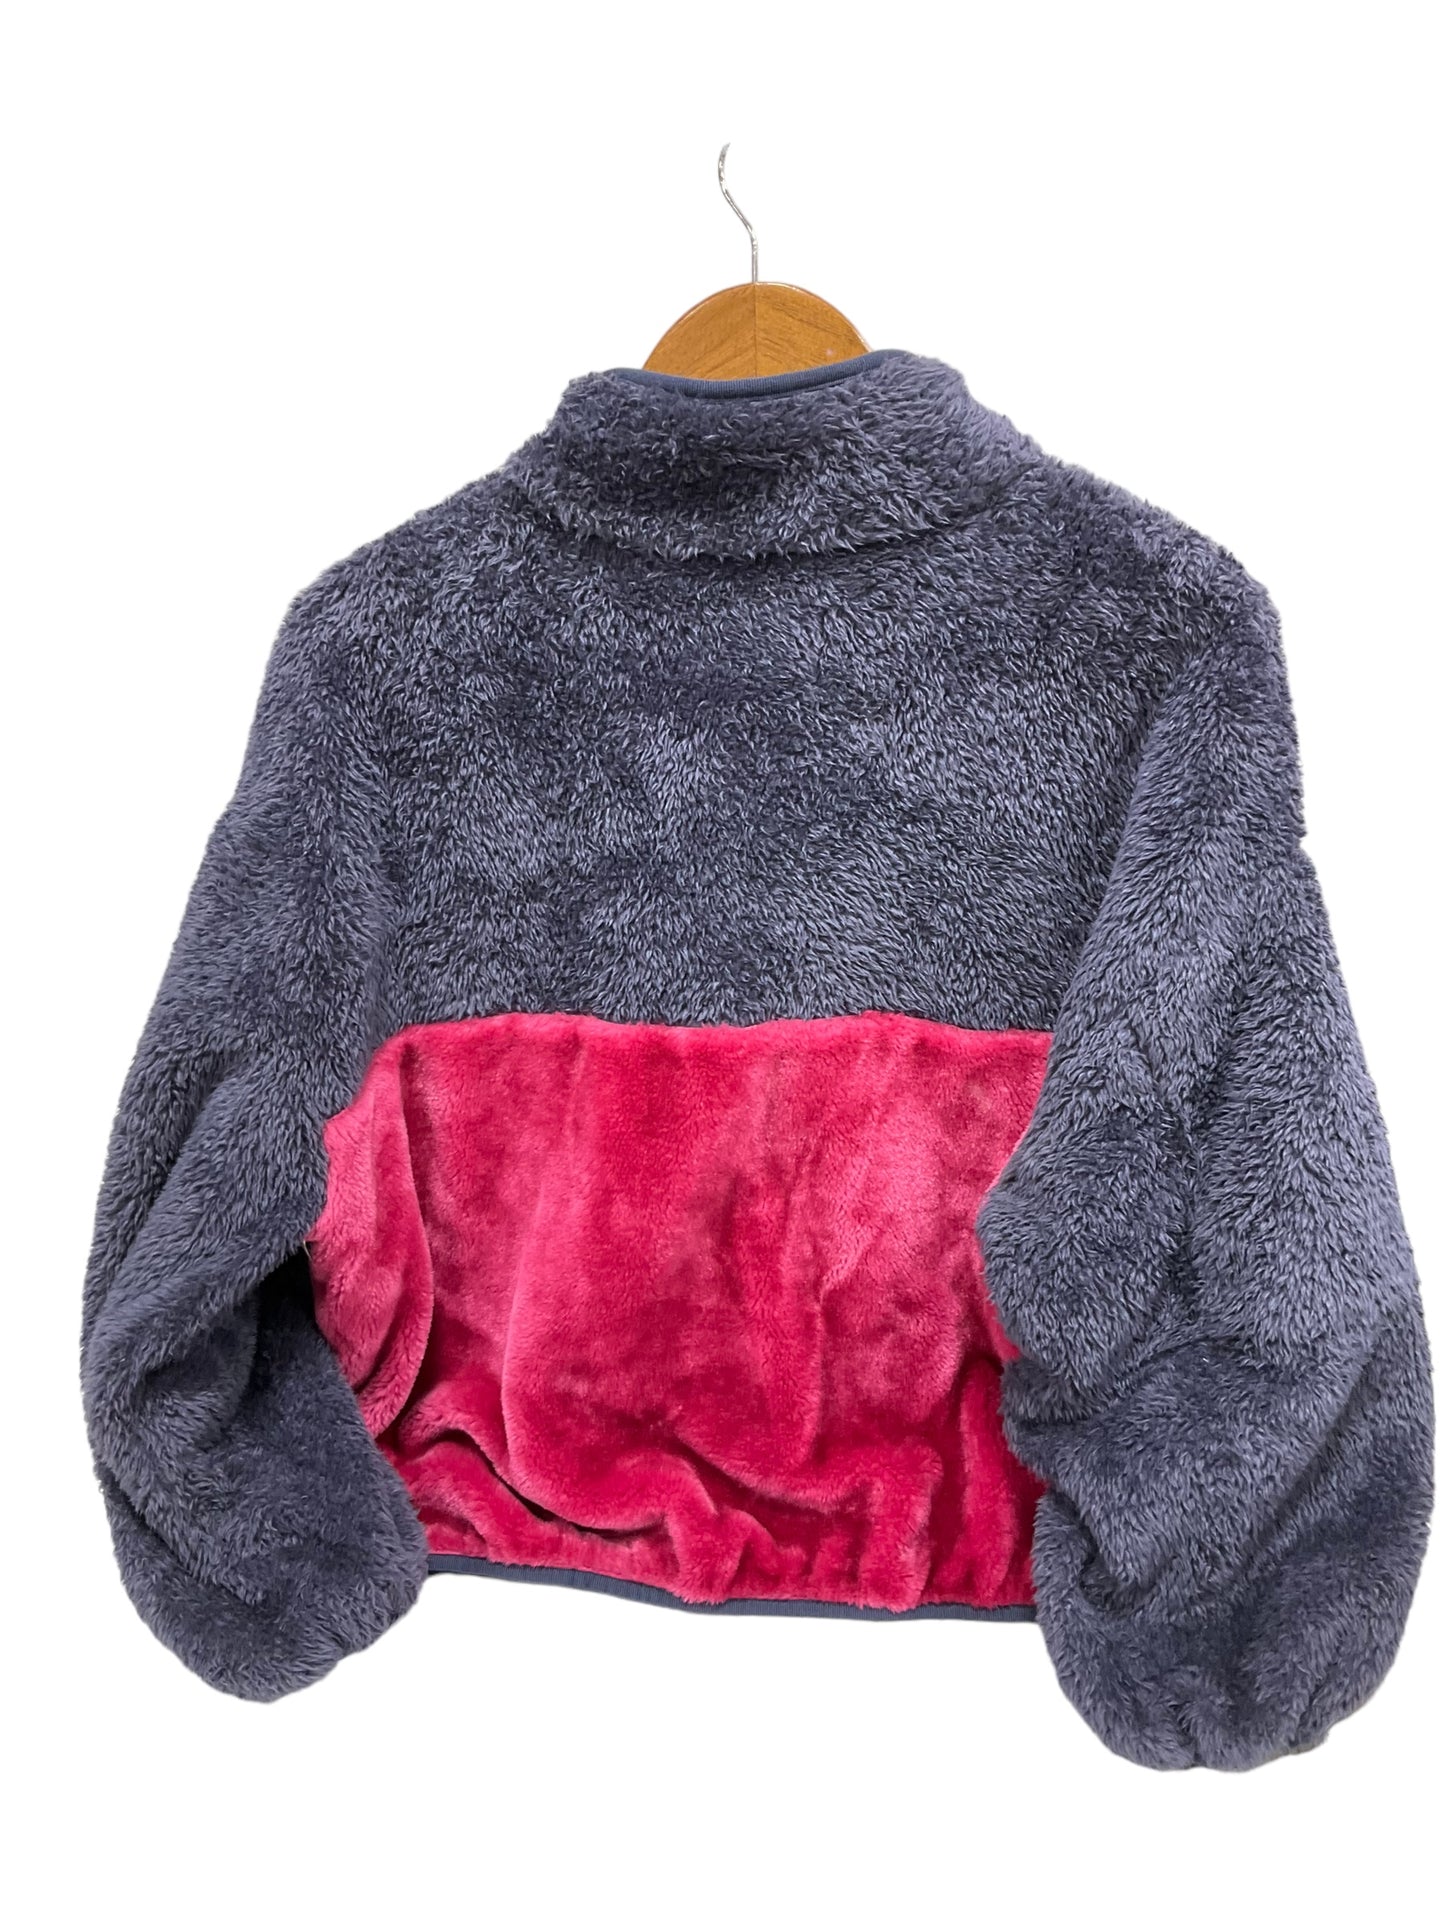 Jacket Fleece By Ugg  Size: Xs